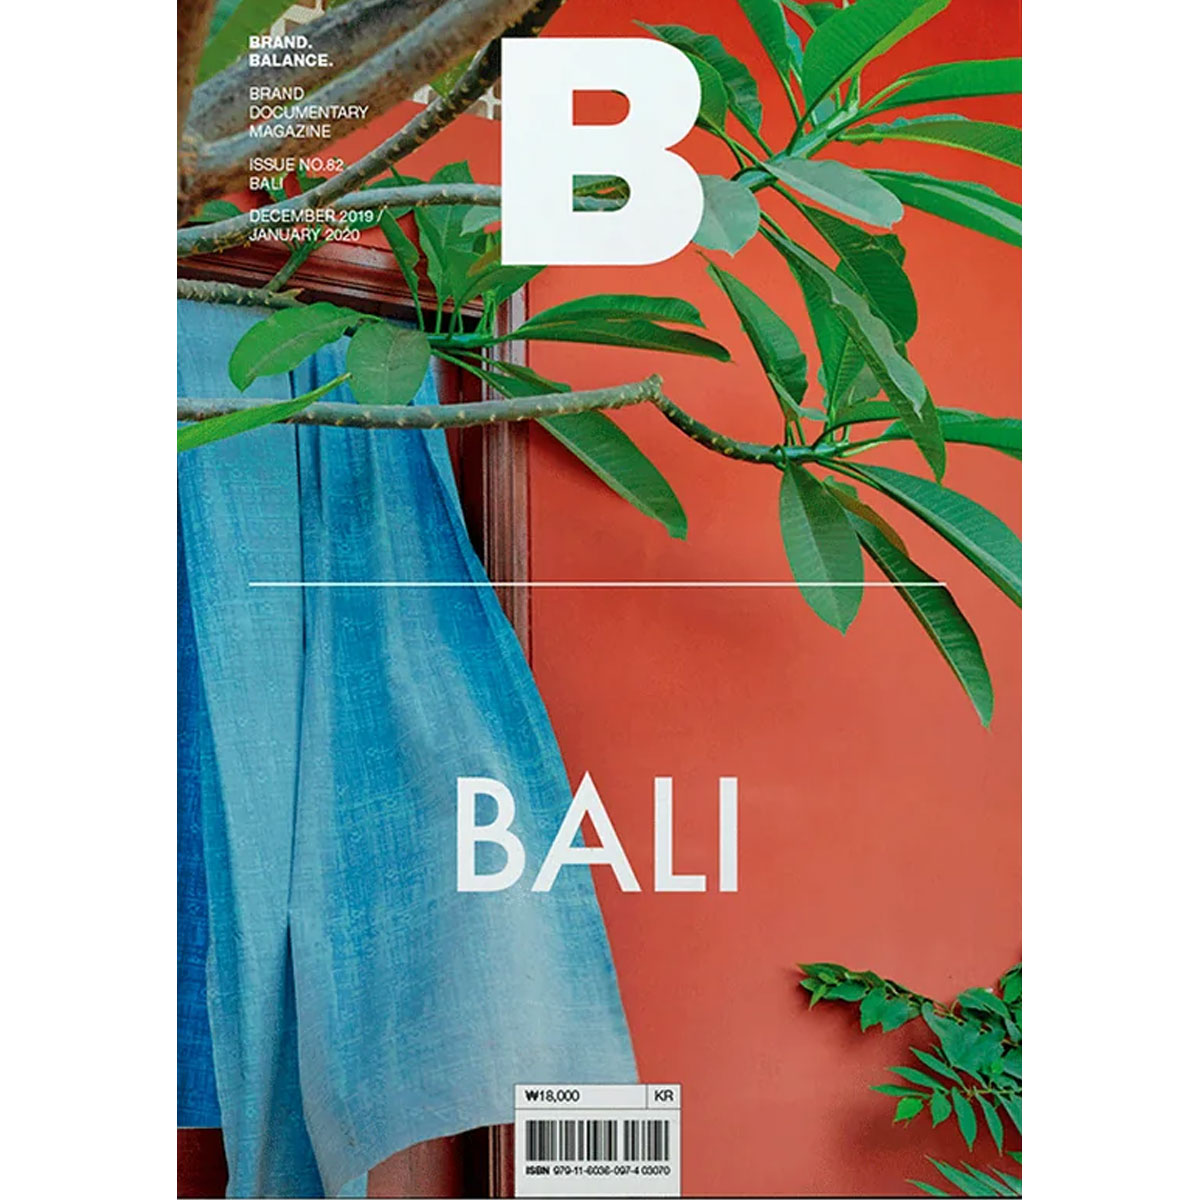 Issue N 82 BALI